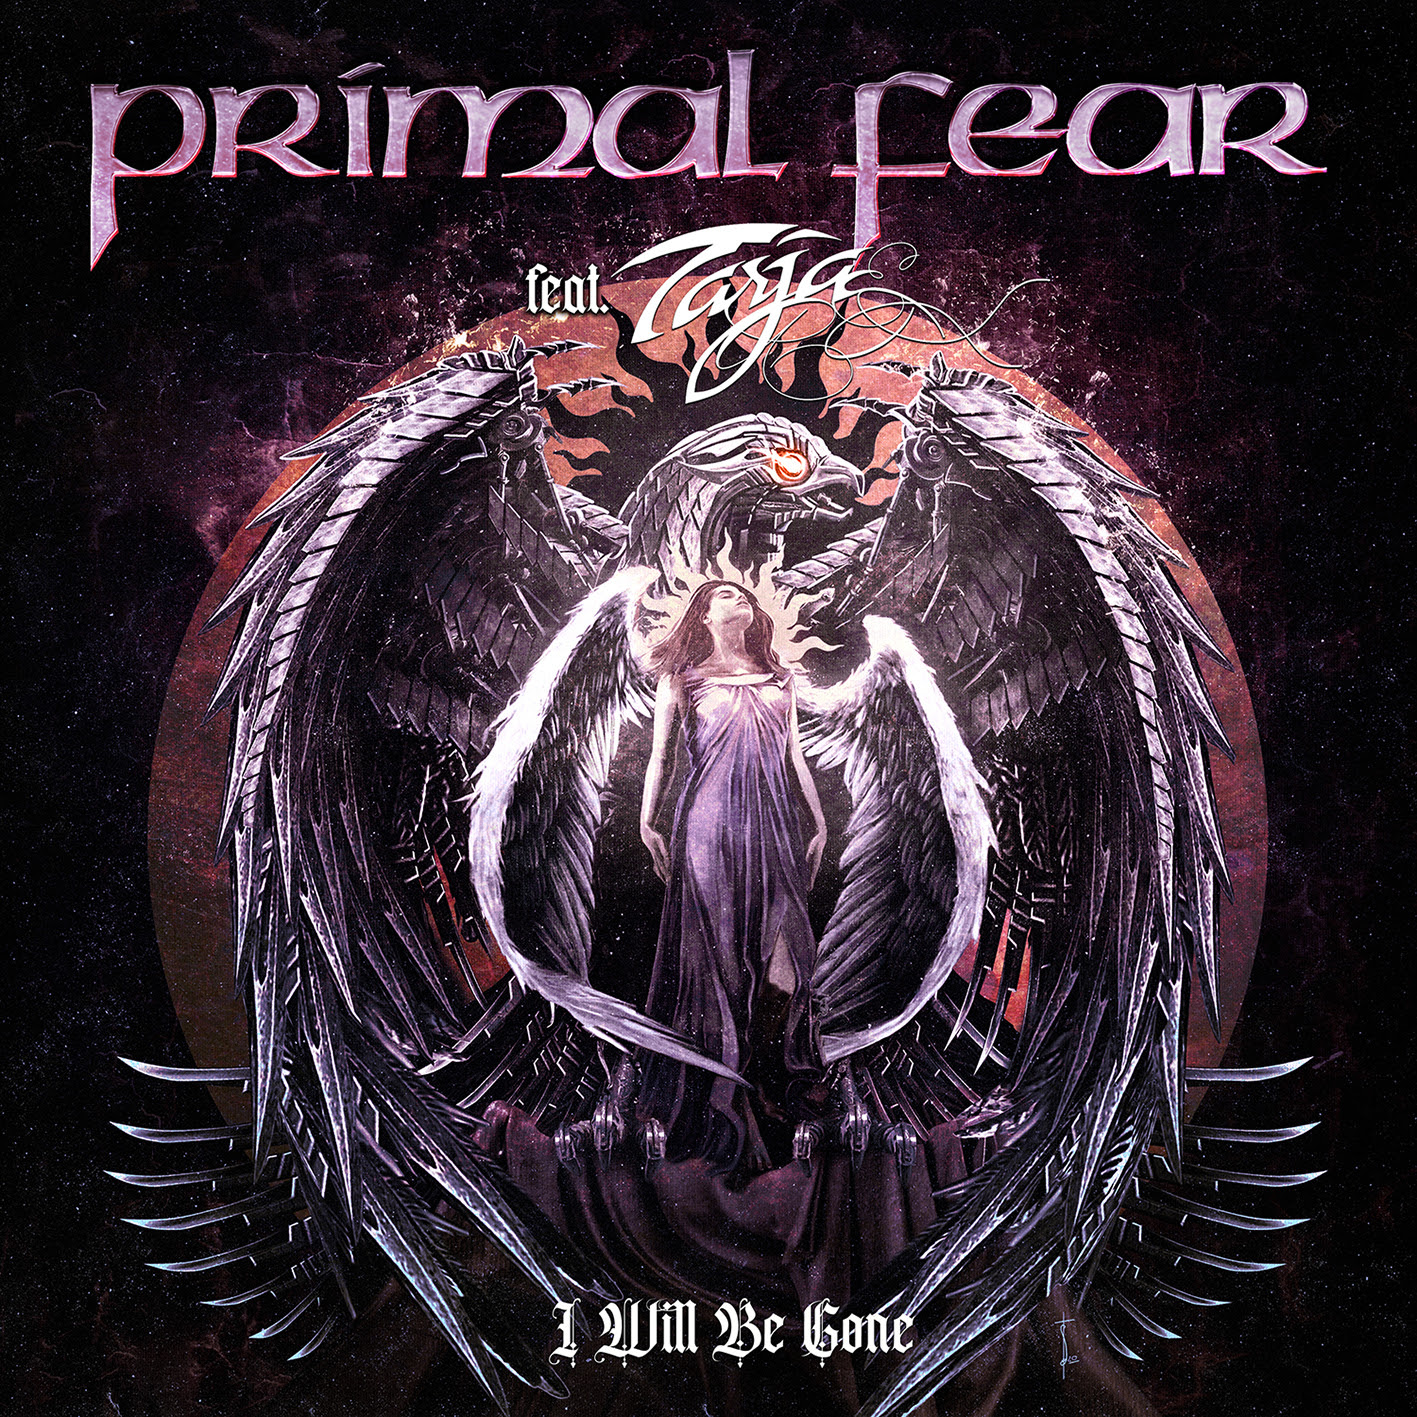 PRIMAL FEAR - Single mit Tarja veröffentlicht